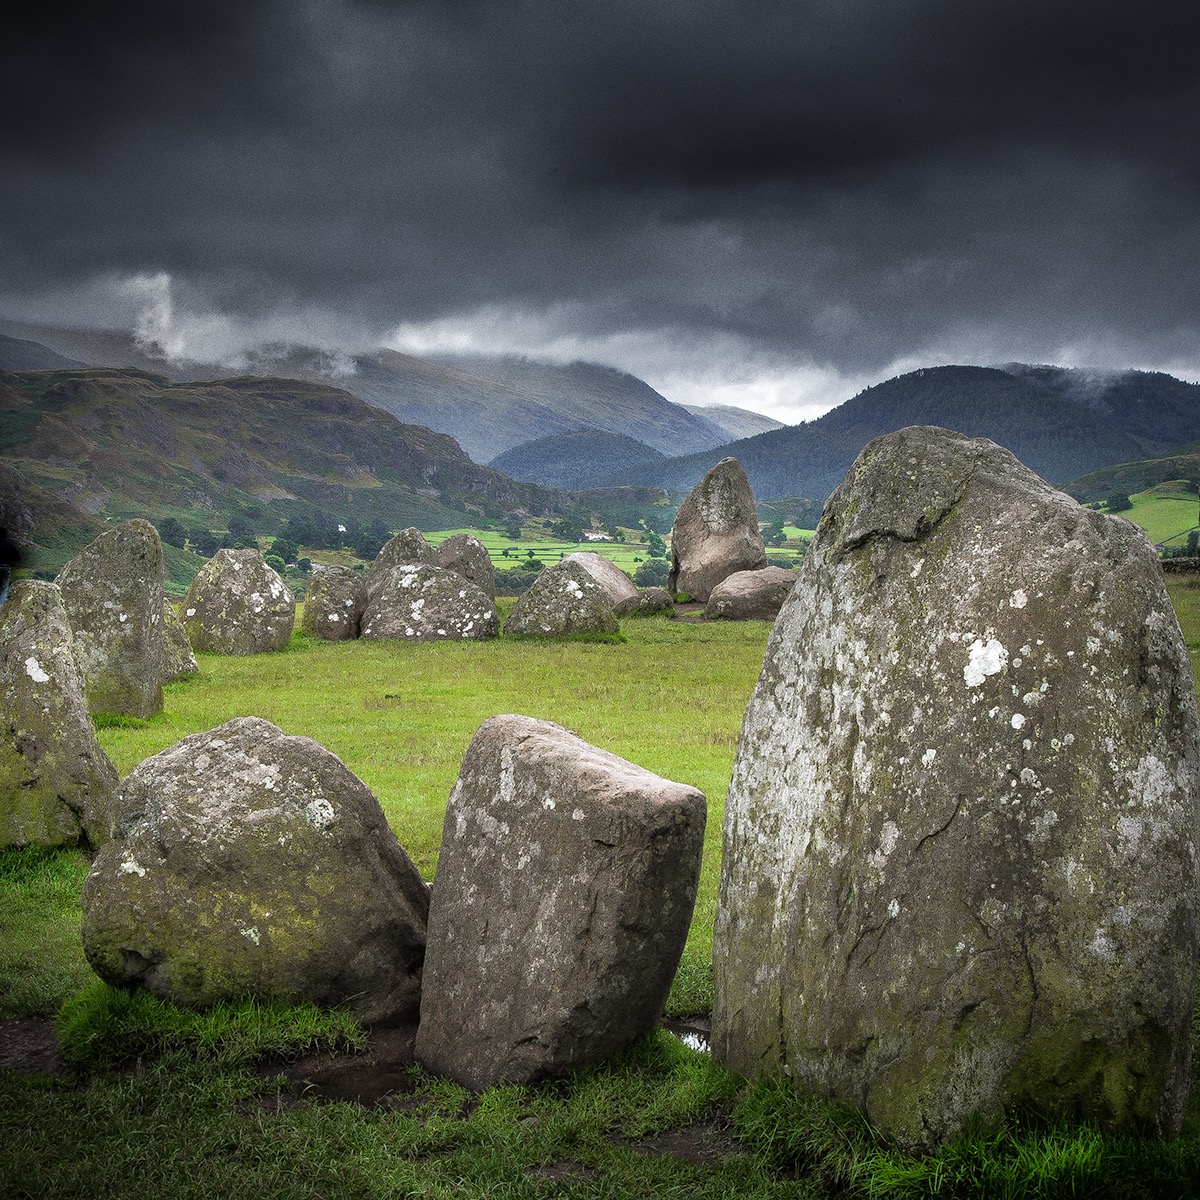 Lake District Landscape photographs